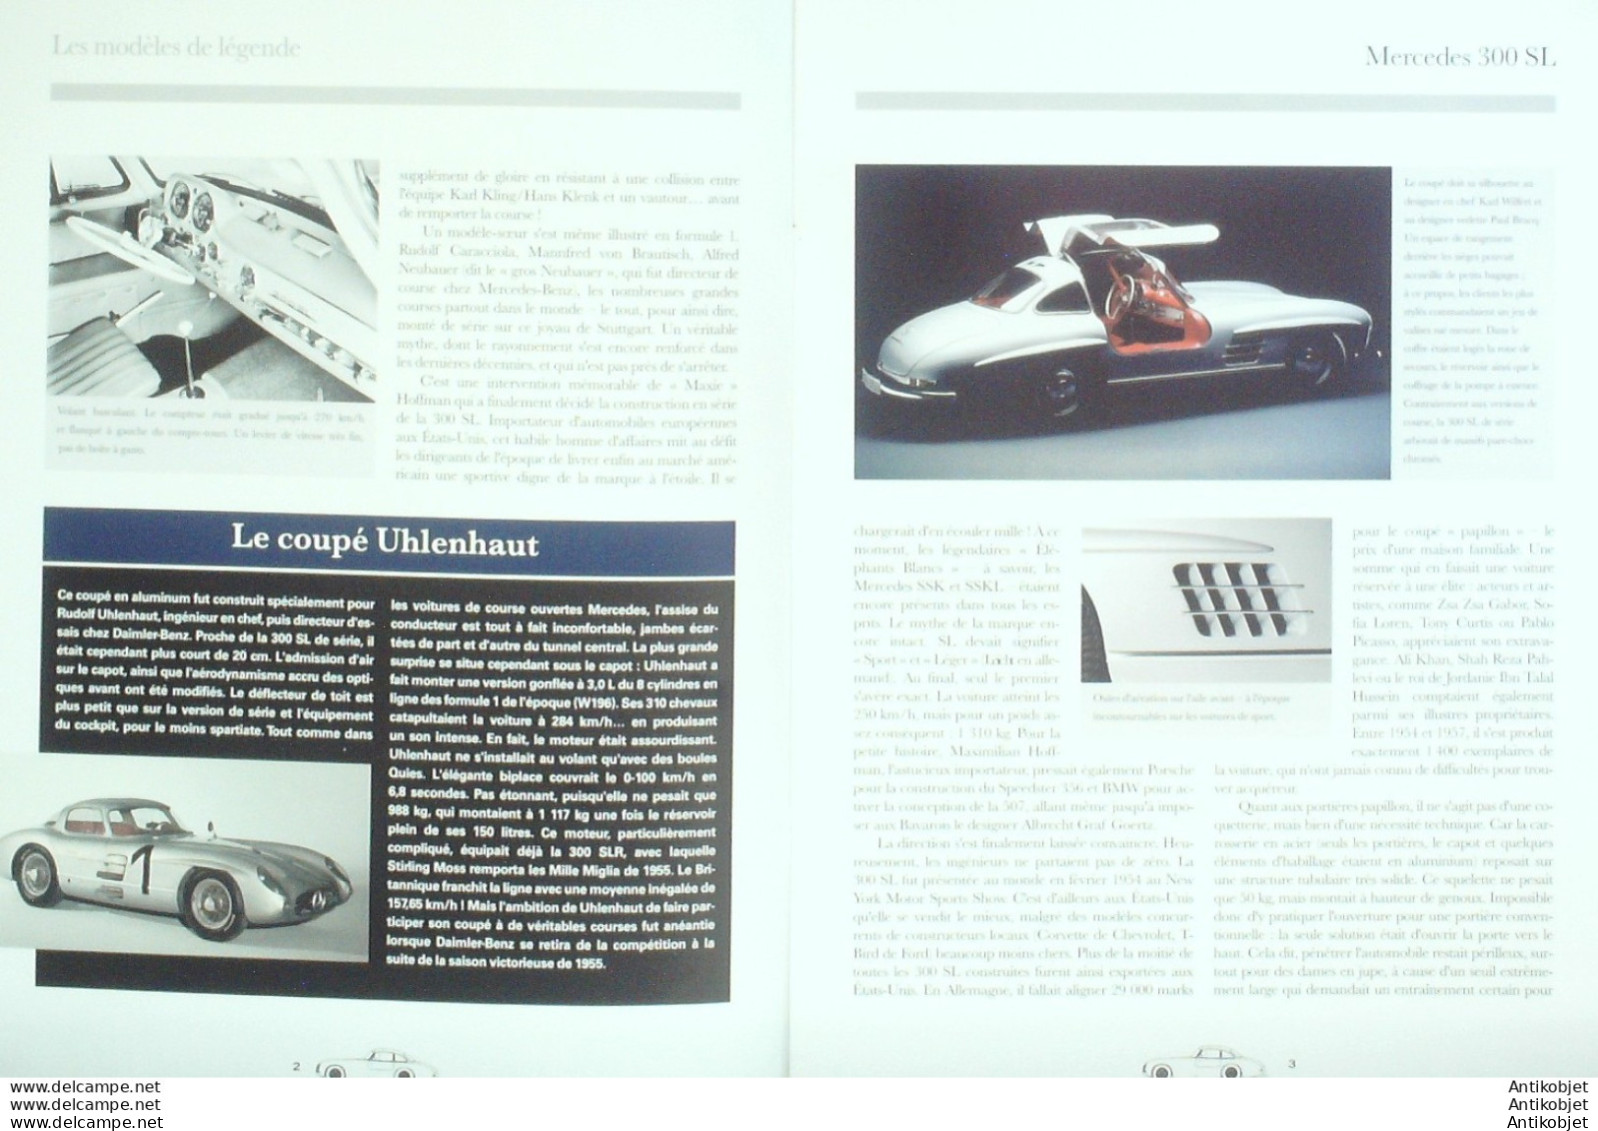 Mercedes-Benz 300 SL édition Hachette - Geschichte